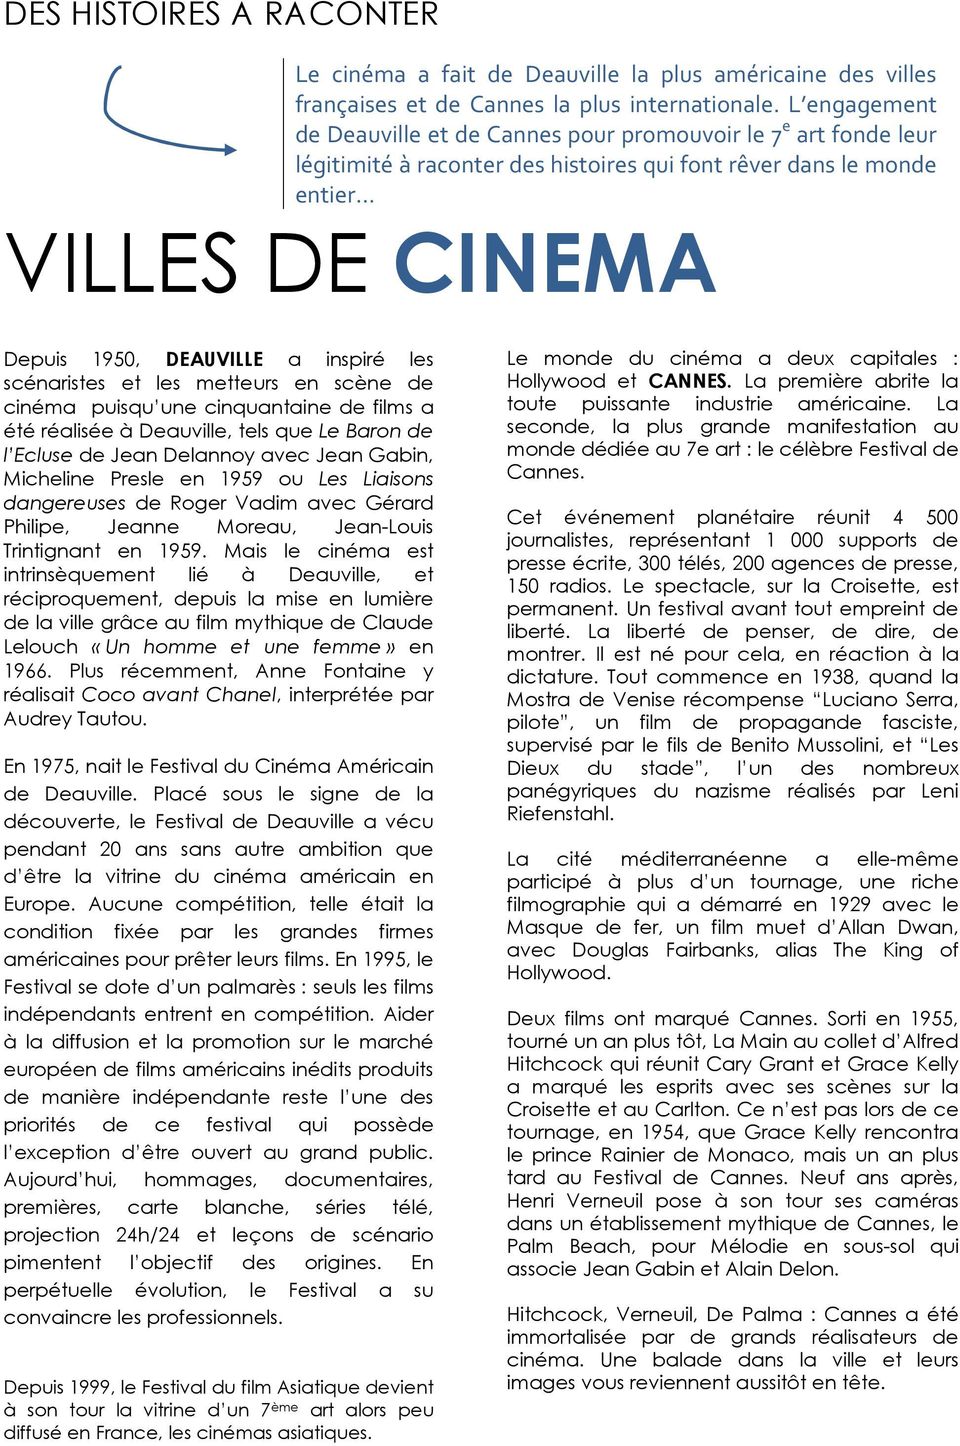 les scénaristes et les metteurs en scène de cinéma puisqu une cinquantaine de films a été réalisée à Deauville, tels que Le Baron de l Ecluse de Jean Delannoy avec Jean Gabin, Micheline Presle en